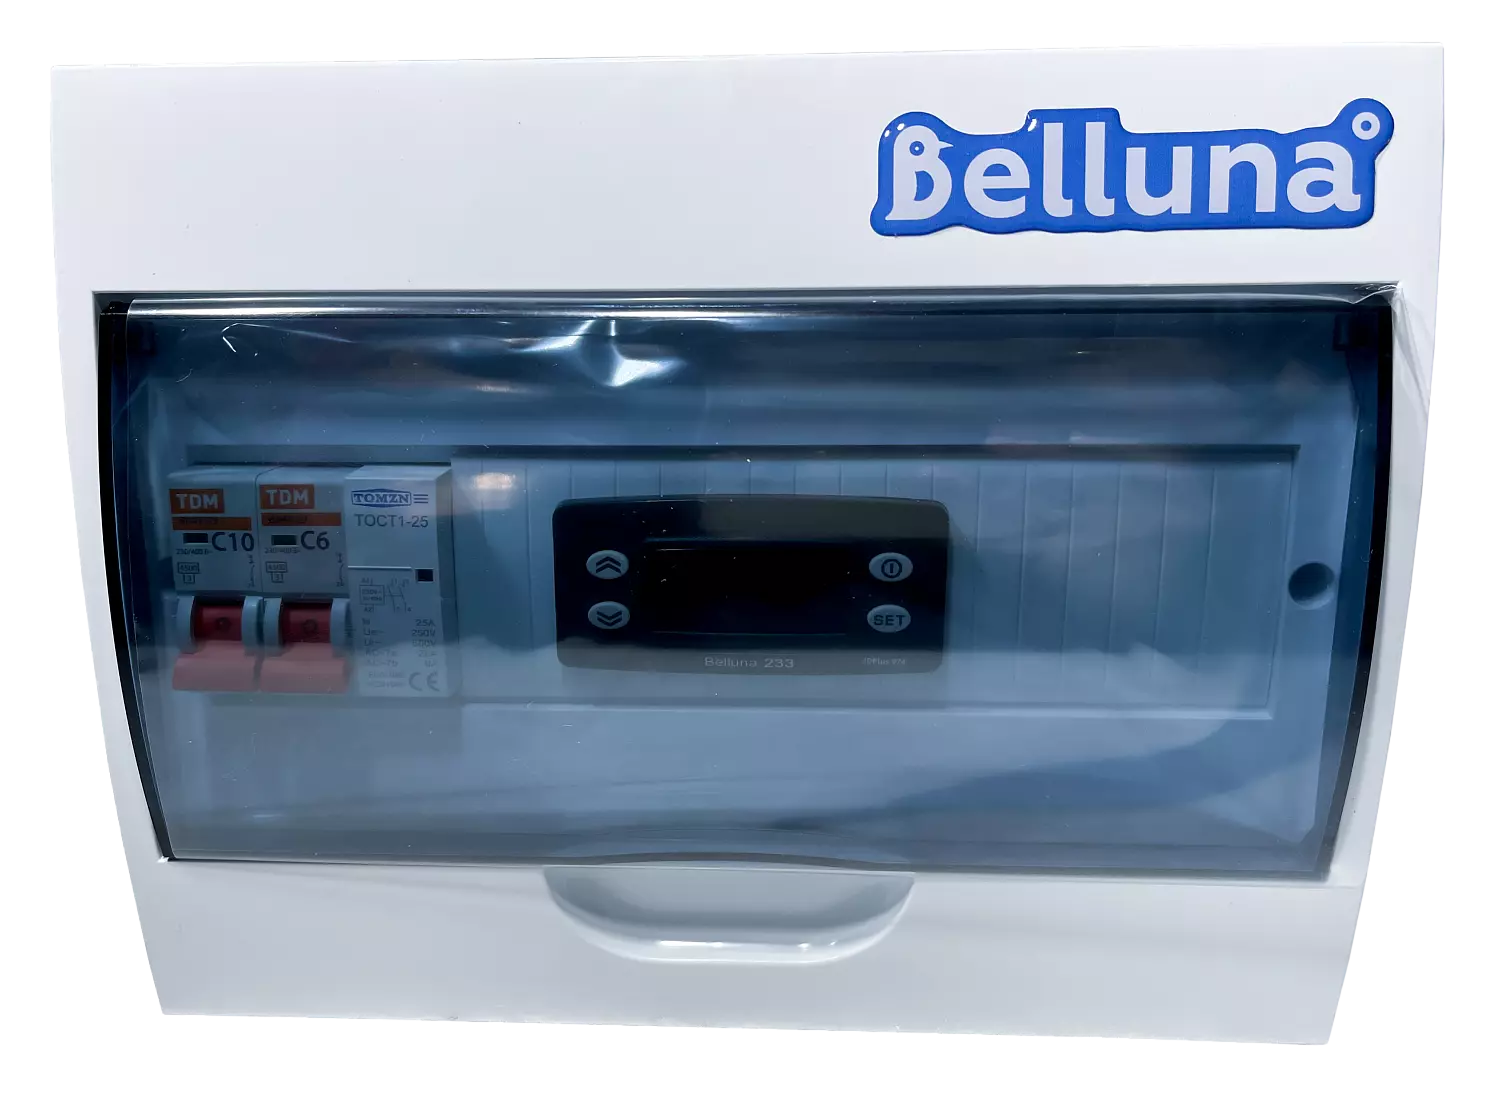 сплит-система Belluna U310 Воронеж